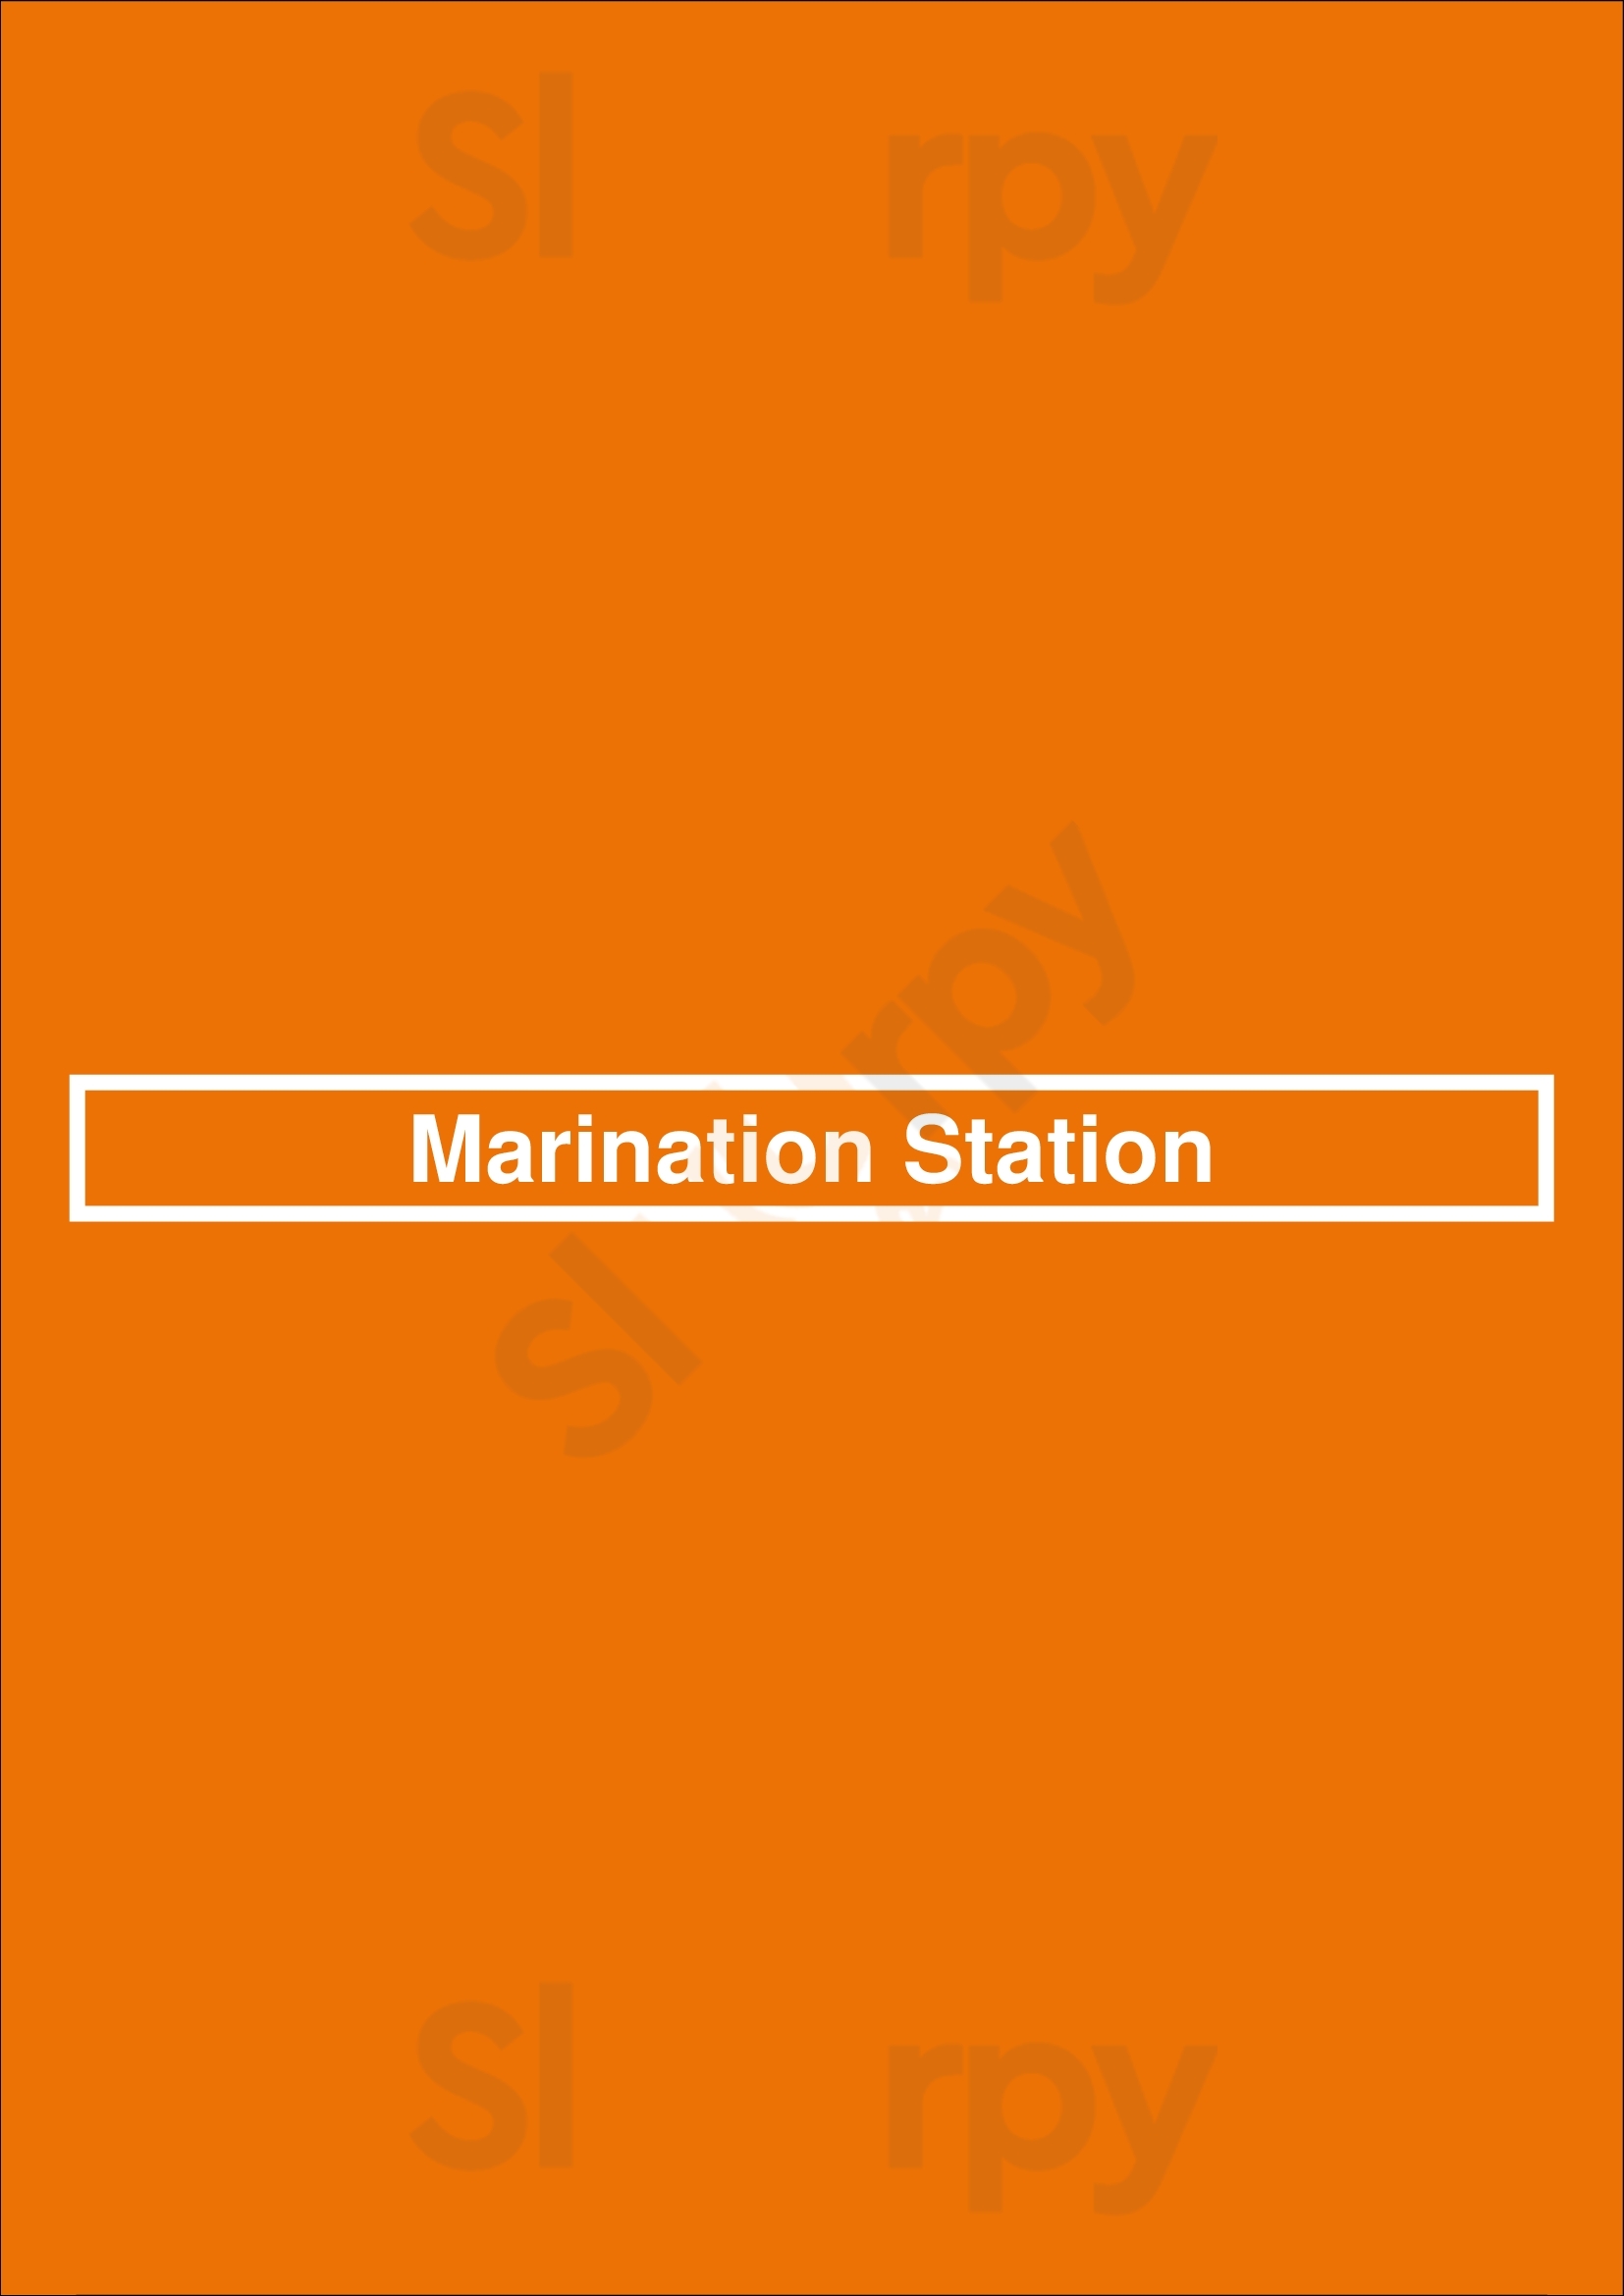 Marination Station Seattle Menu - 1